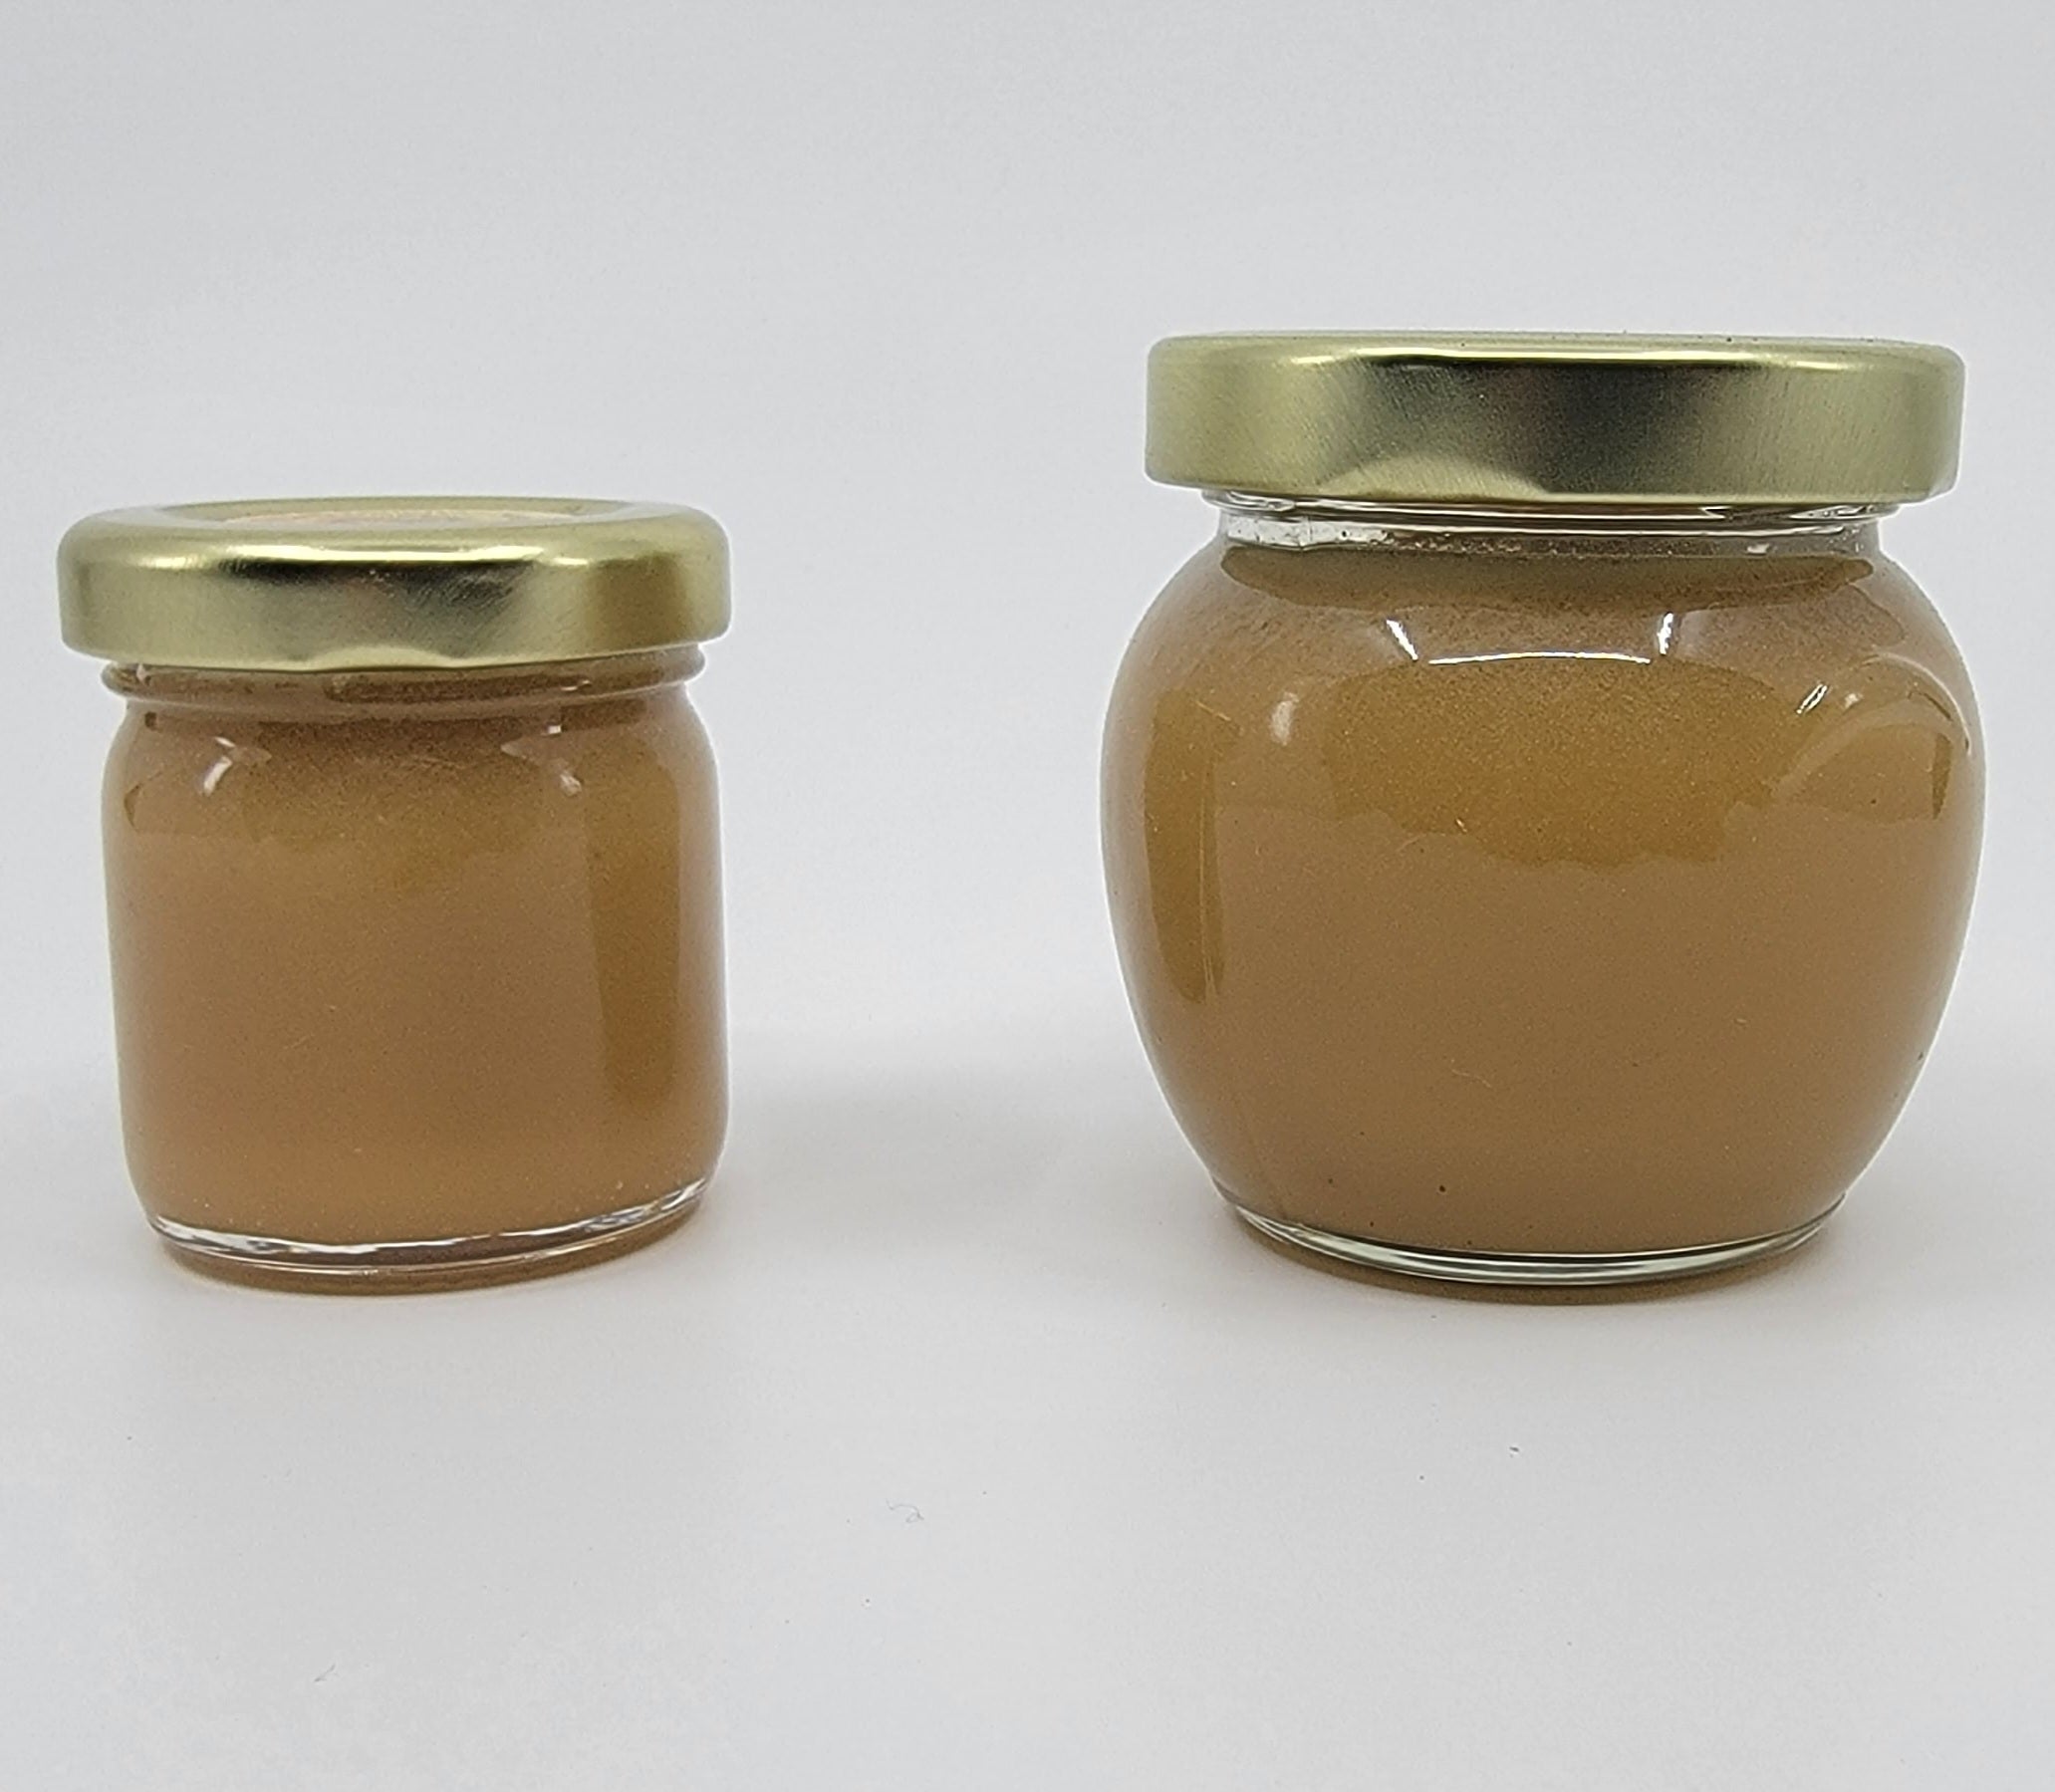 Extra Strength Frankincense Honey